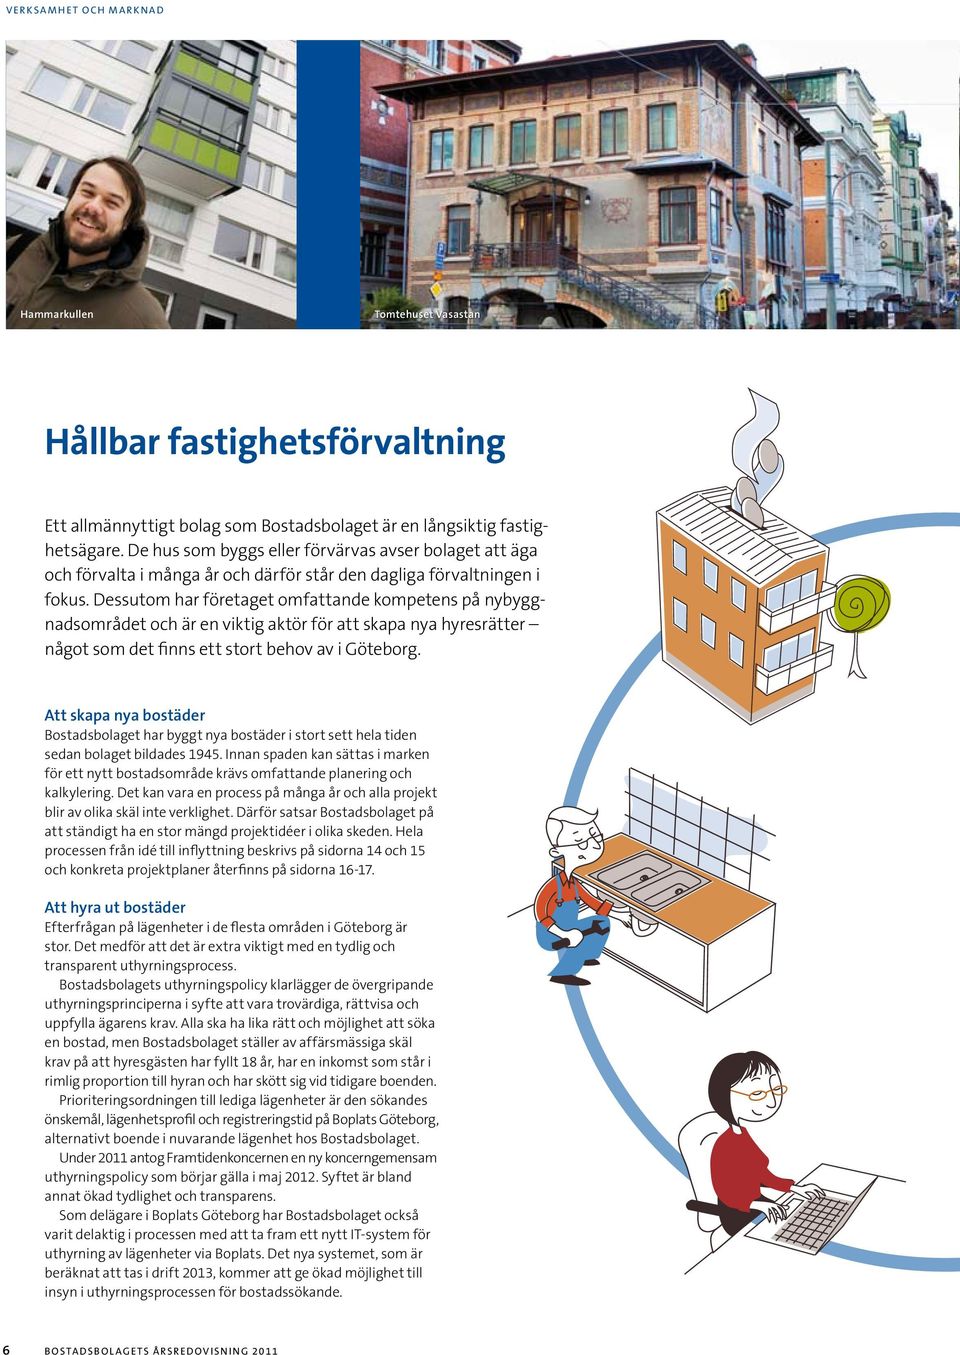 Dessutom har företaget omfattande kompetens på nybyggnadsområdet och är en viktig aktör för att skapa nya hyresrätter något som det finns ett stort behov av i Göteborg.